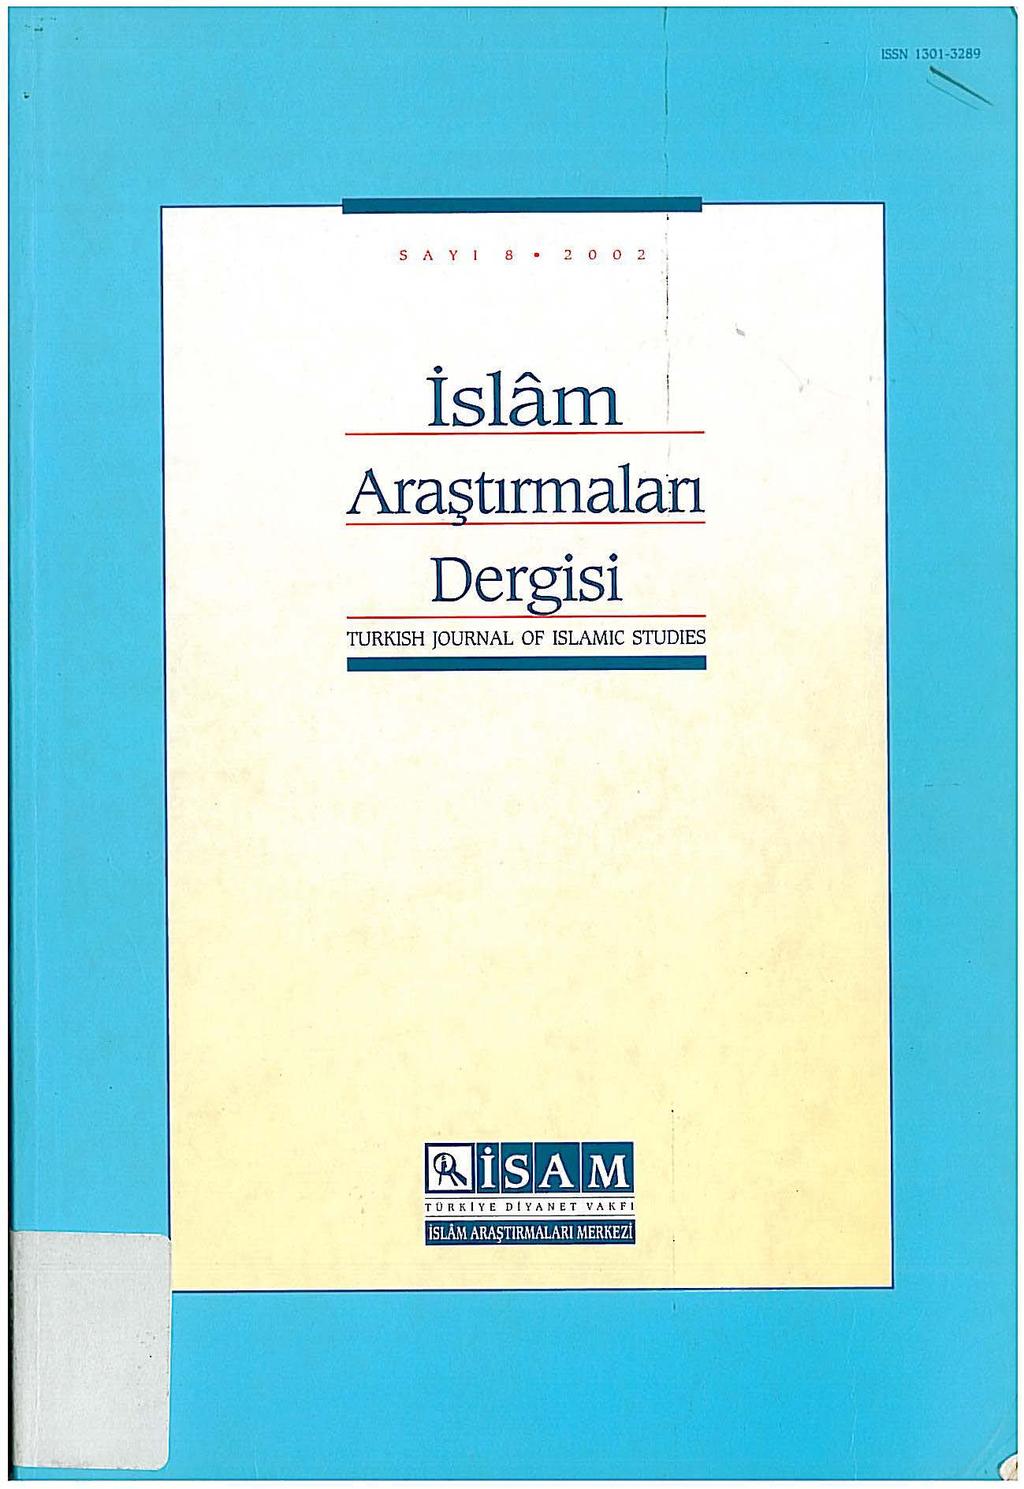 ISSN 1301 3289 ~ SAY I 8 2002, islam Araştırmalan Dergisi TURKISH JOURNAL